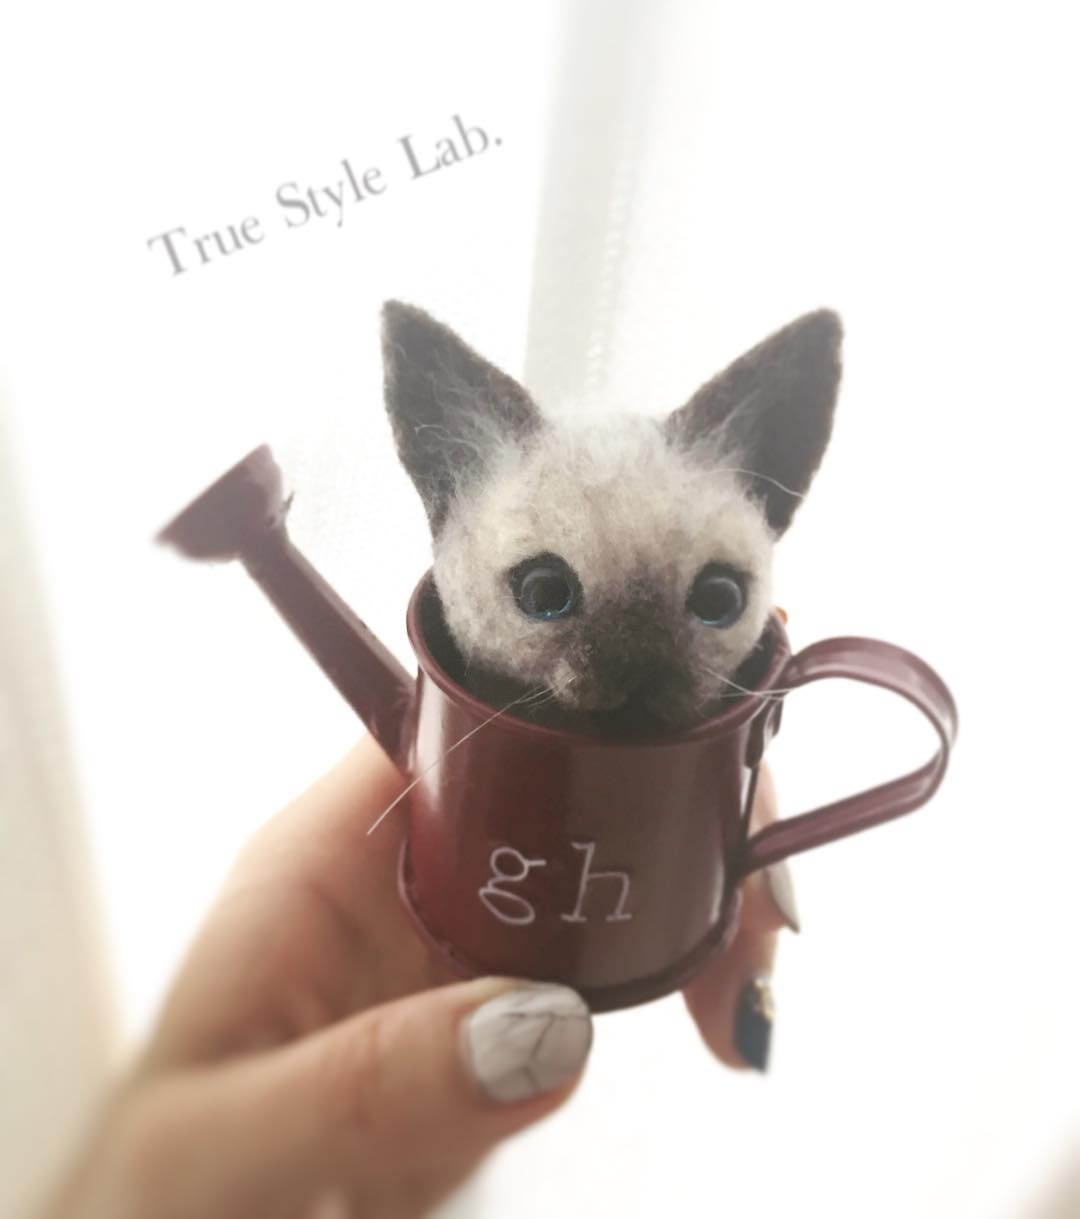 12-Kitten-Terumi-Ohta-Giving-Life-to-Woollen-Animal-Sculptures-www-designstack-co